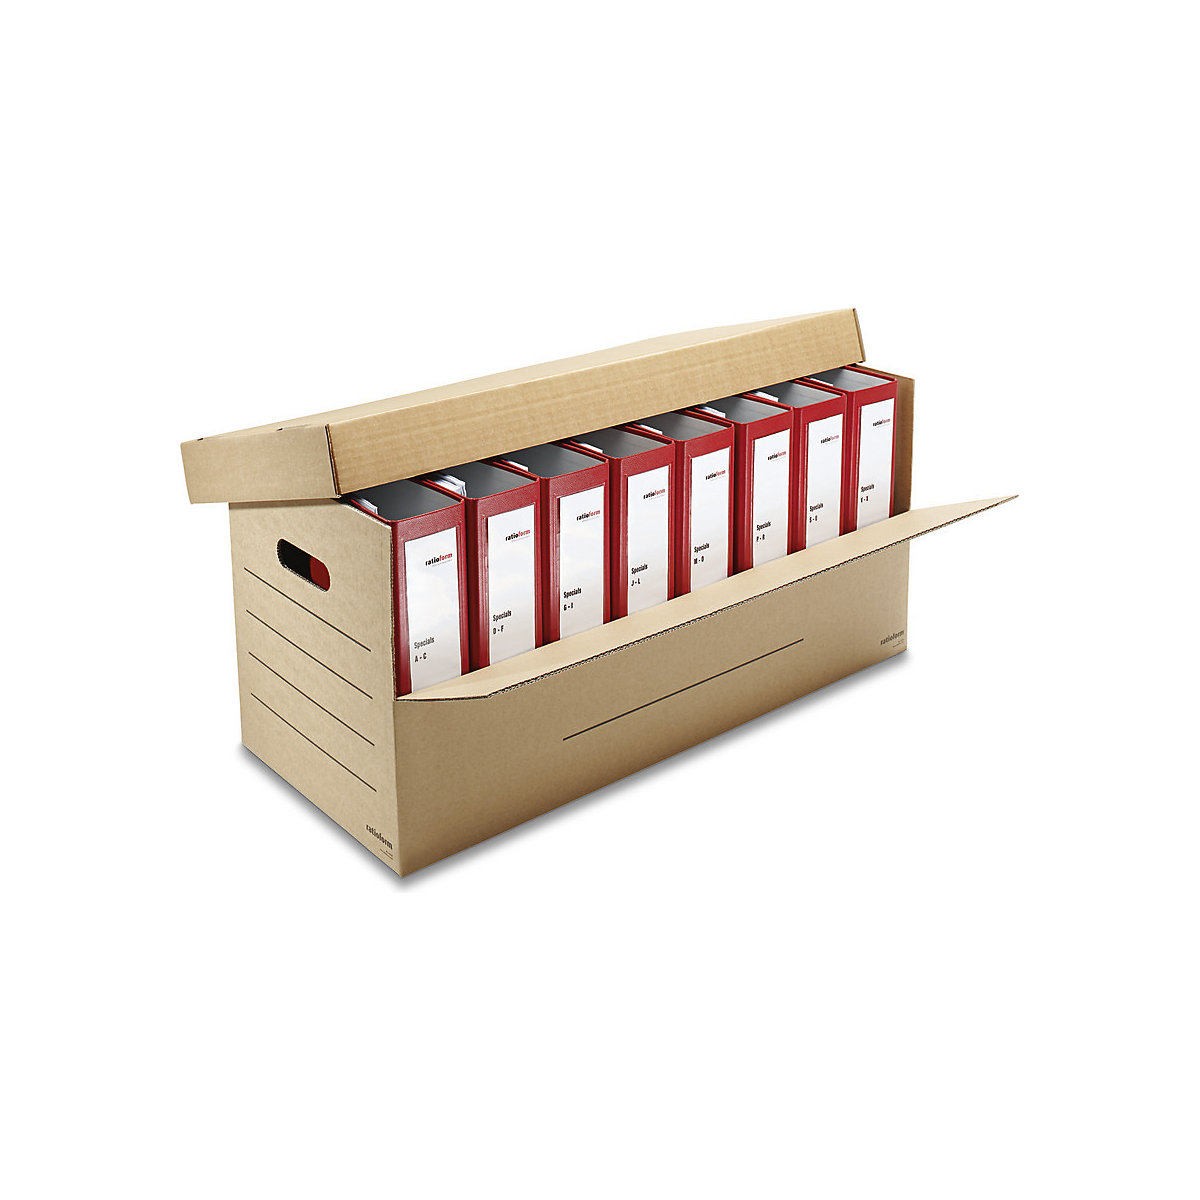 Ordner-Karton, für 3 – 8 breite Ordner mit Deckel, Innenmaße 690 x 300 x 320 mm, ab 50 Stk-1